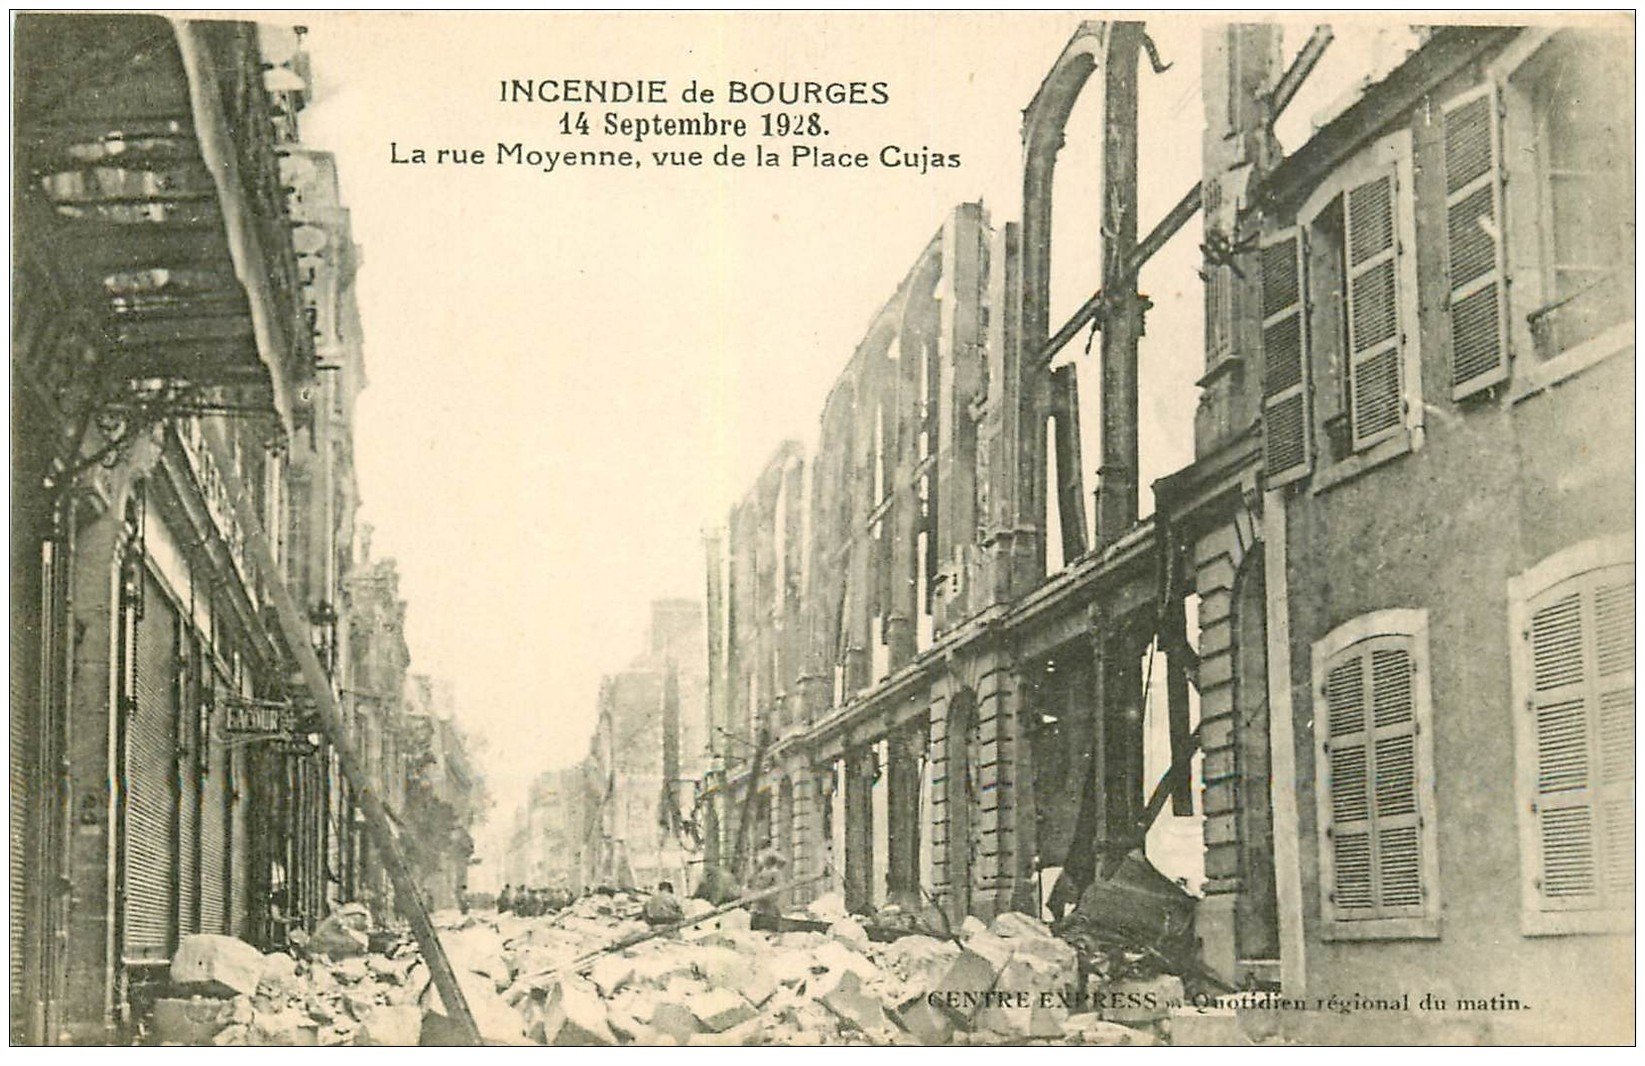 8 CPA Dép 18 CHER incendie le 14/09/1928 à Bourges 